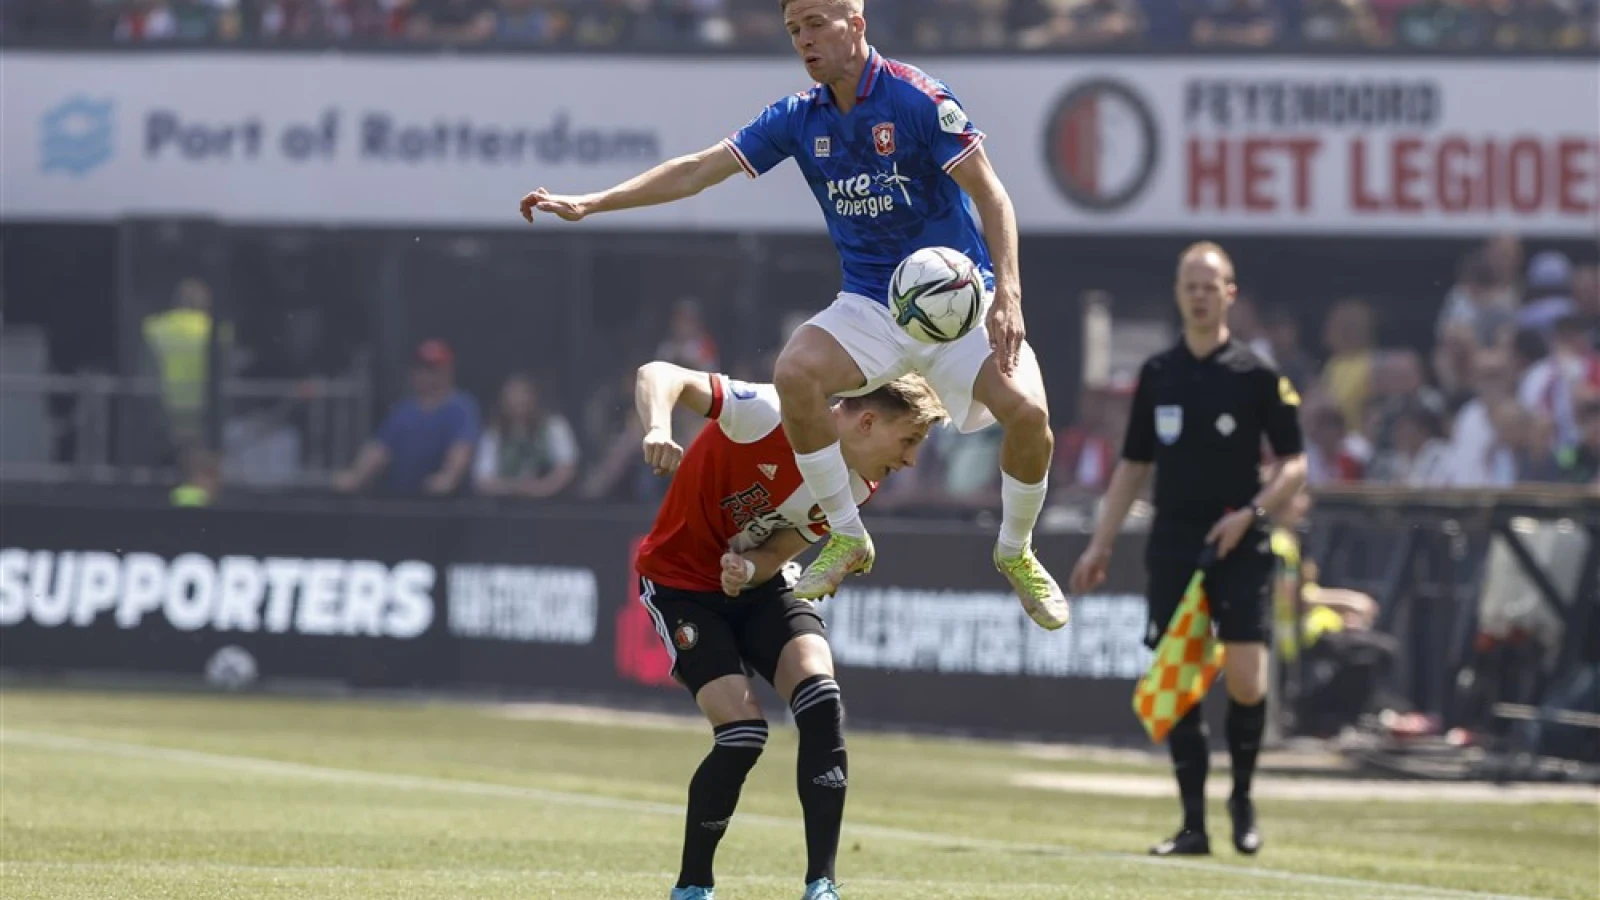 LIVE | Feyenoord - FC Twente 1-2 | Einde wedstrijd